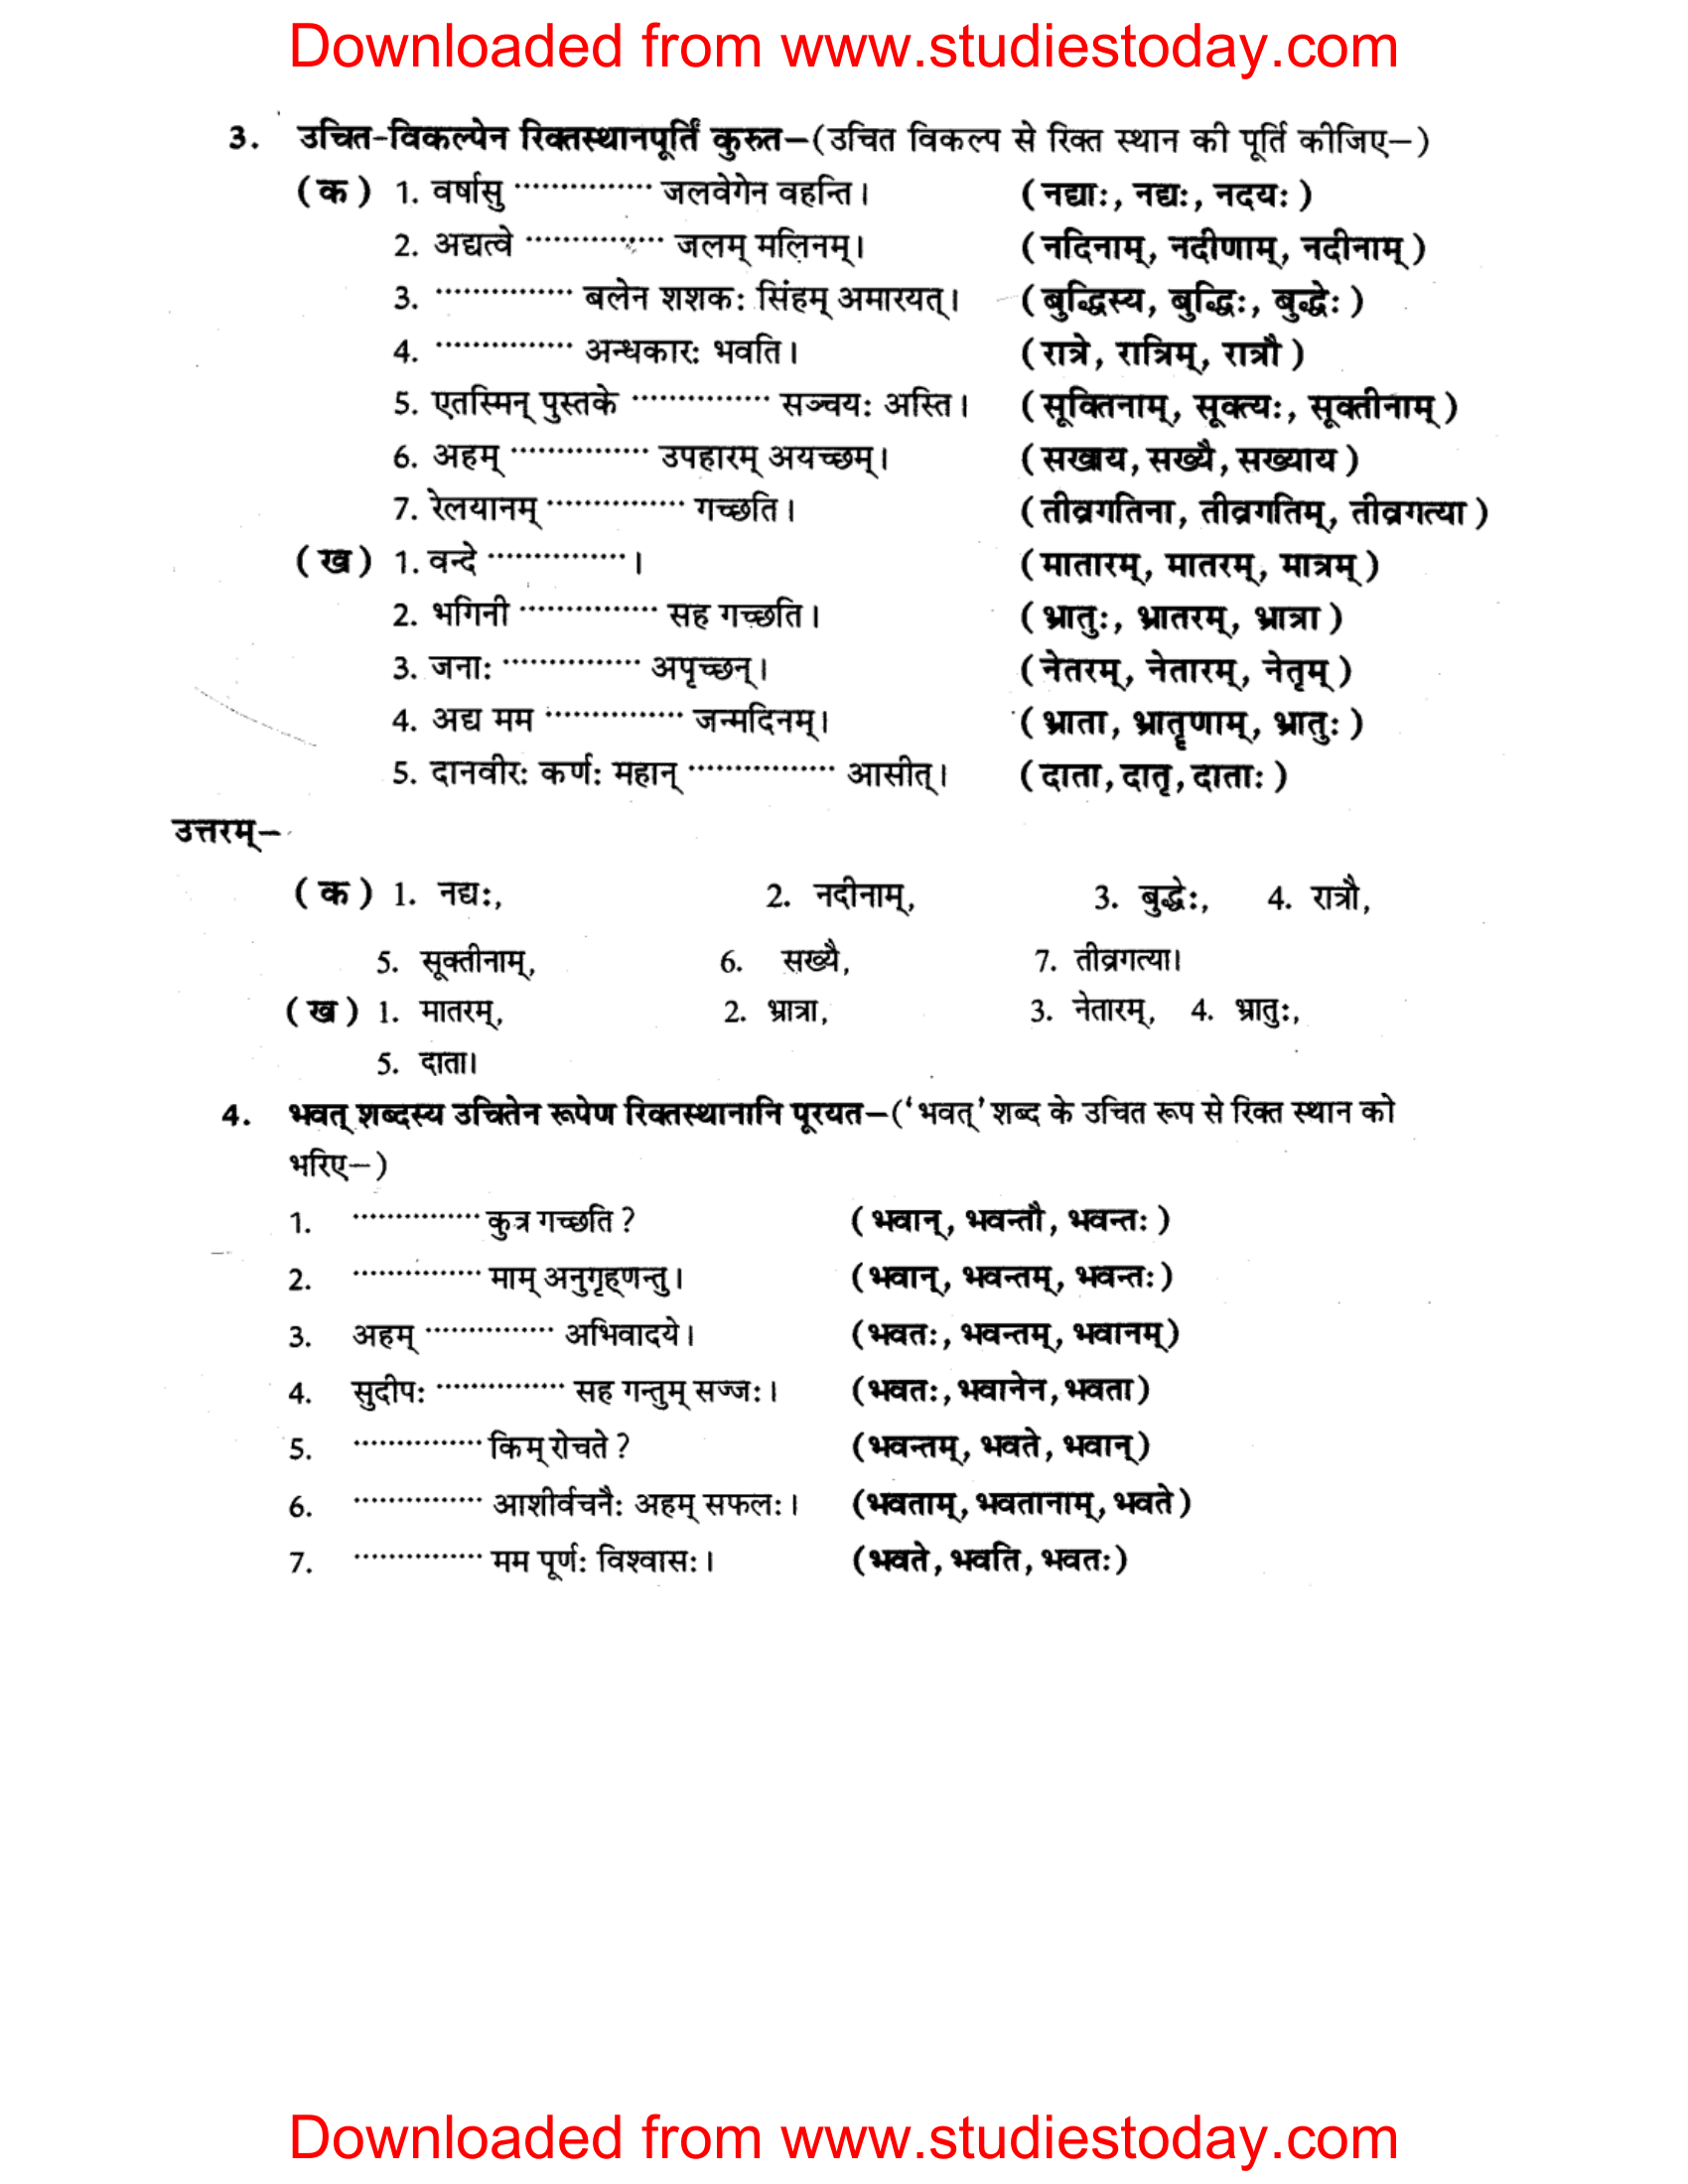 ncert-solutions-class-8-sanskrit-chapter-4-shabdrupani-abhyas-3